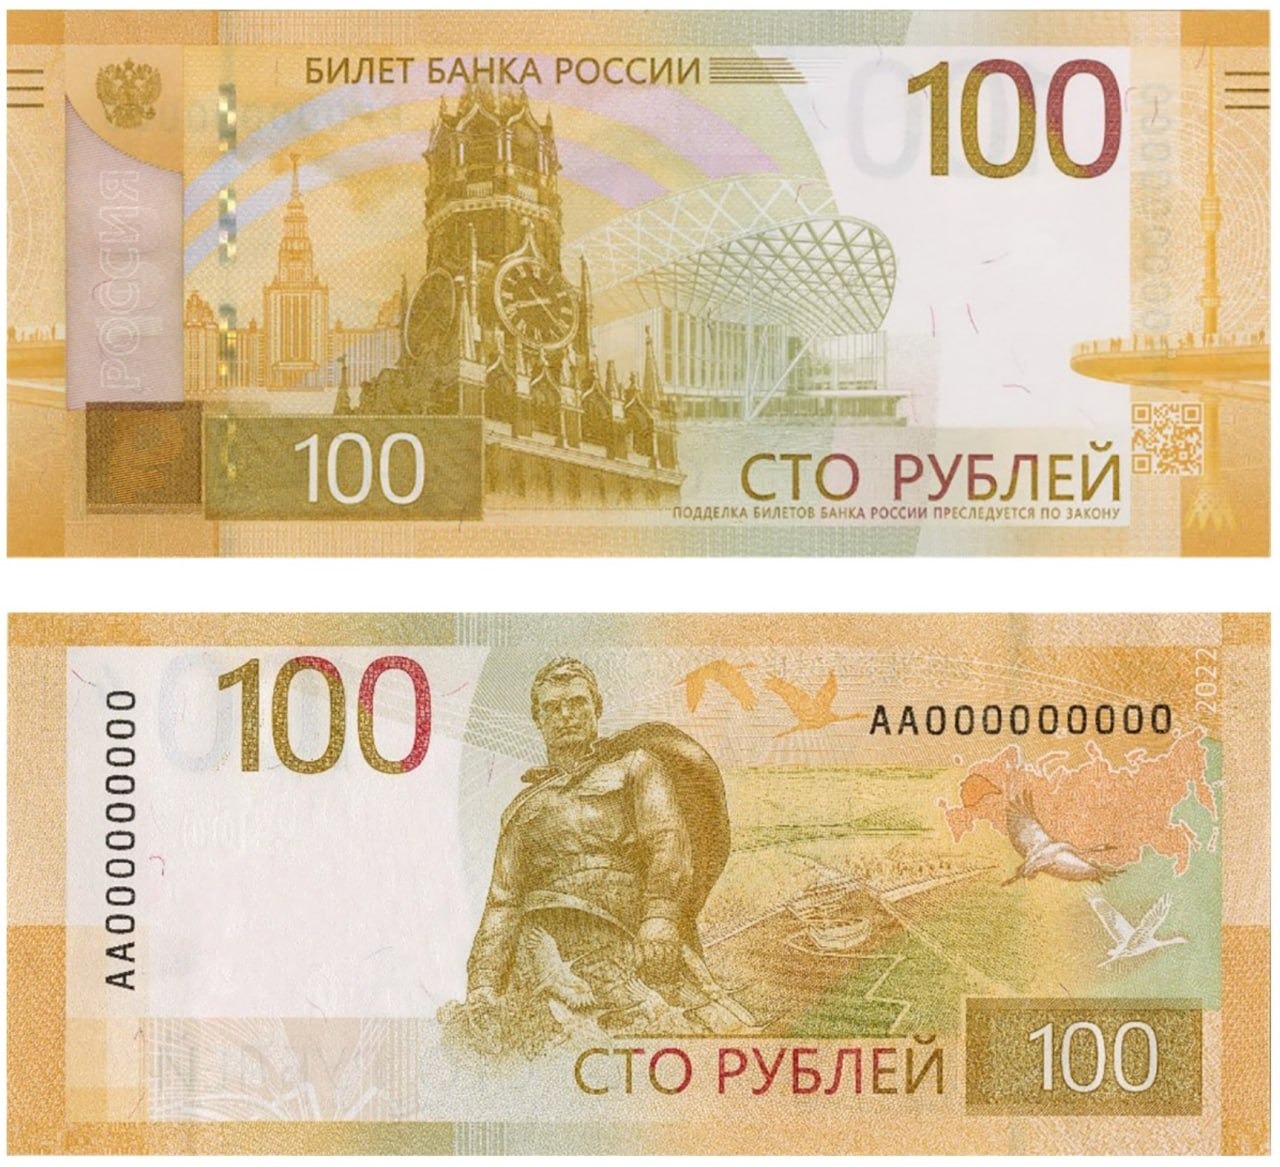 Новые купюры в 100 рублей появились в 2022 году, но популярными не стали из-за проблем с перенастройкой банкоматов 